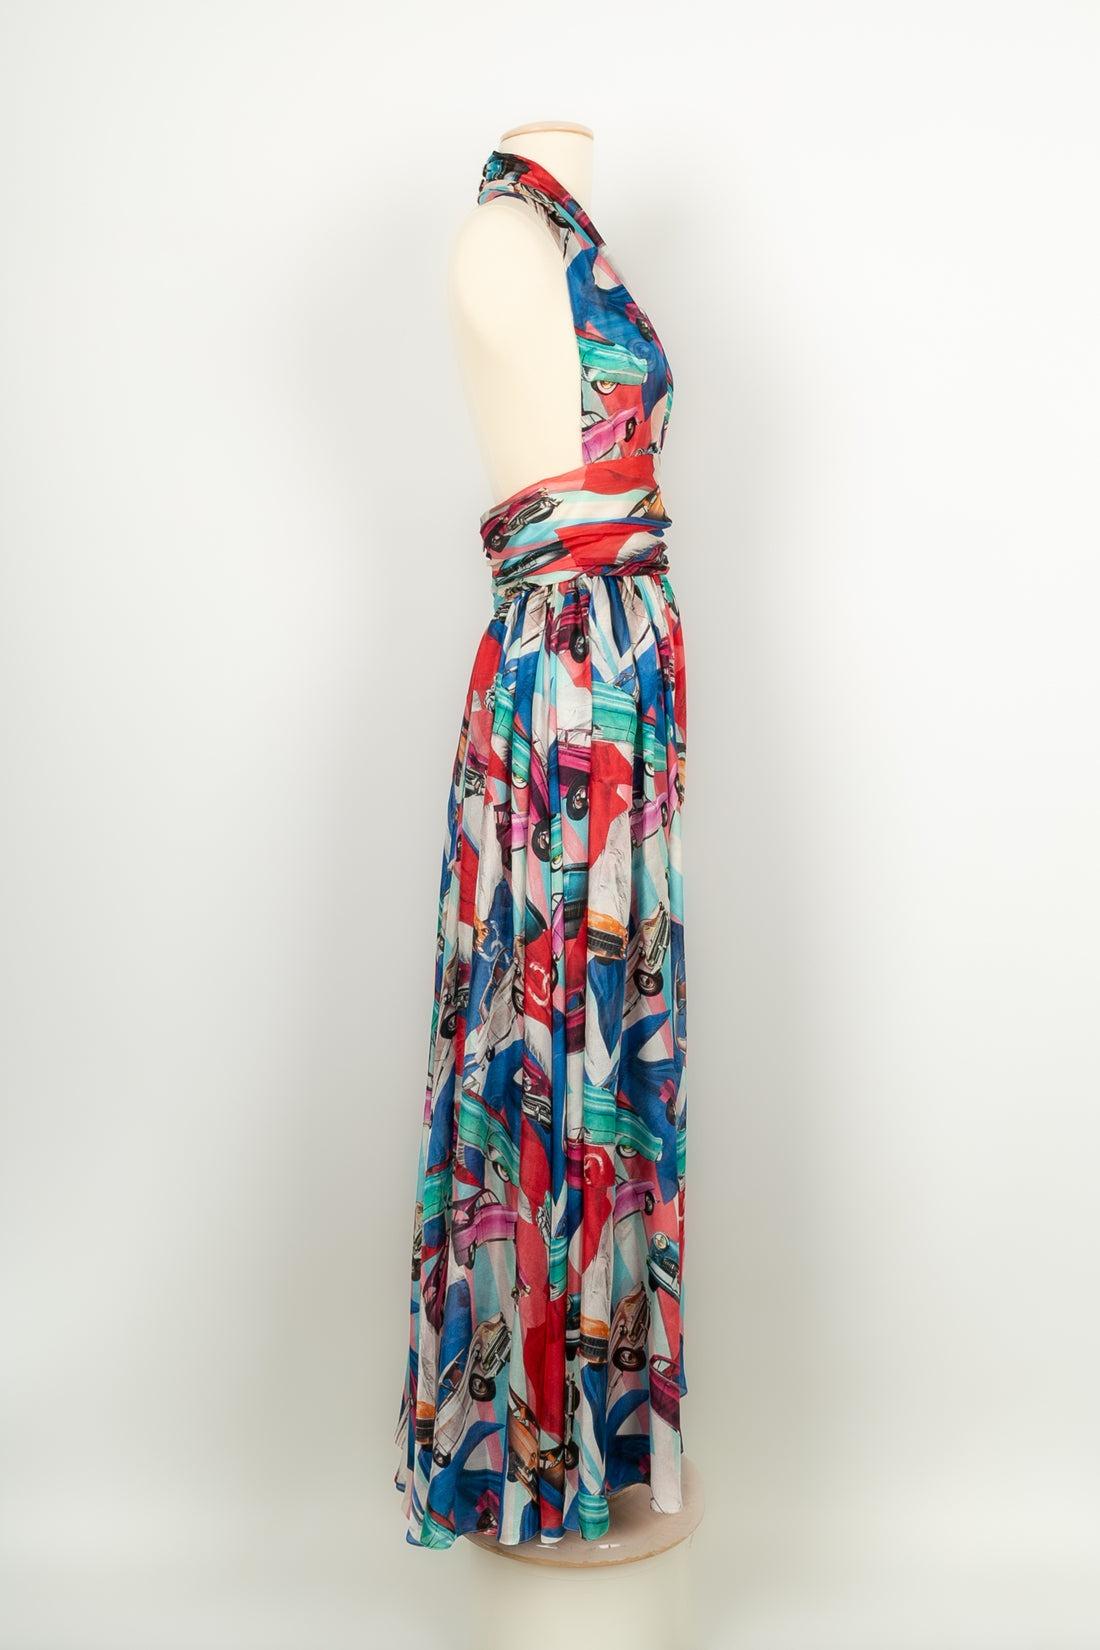 Chanel - (Fabriquée en France) Longue robe en soie dans les tons rouge, bleu et vert. Taille 34FR. Collectional de la croisière Paris-Cuba 2017.

Informations complémentaires :
Condit : Très bon état.
Dimensions : Taille : 32 cm - Longueur : 136